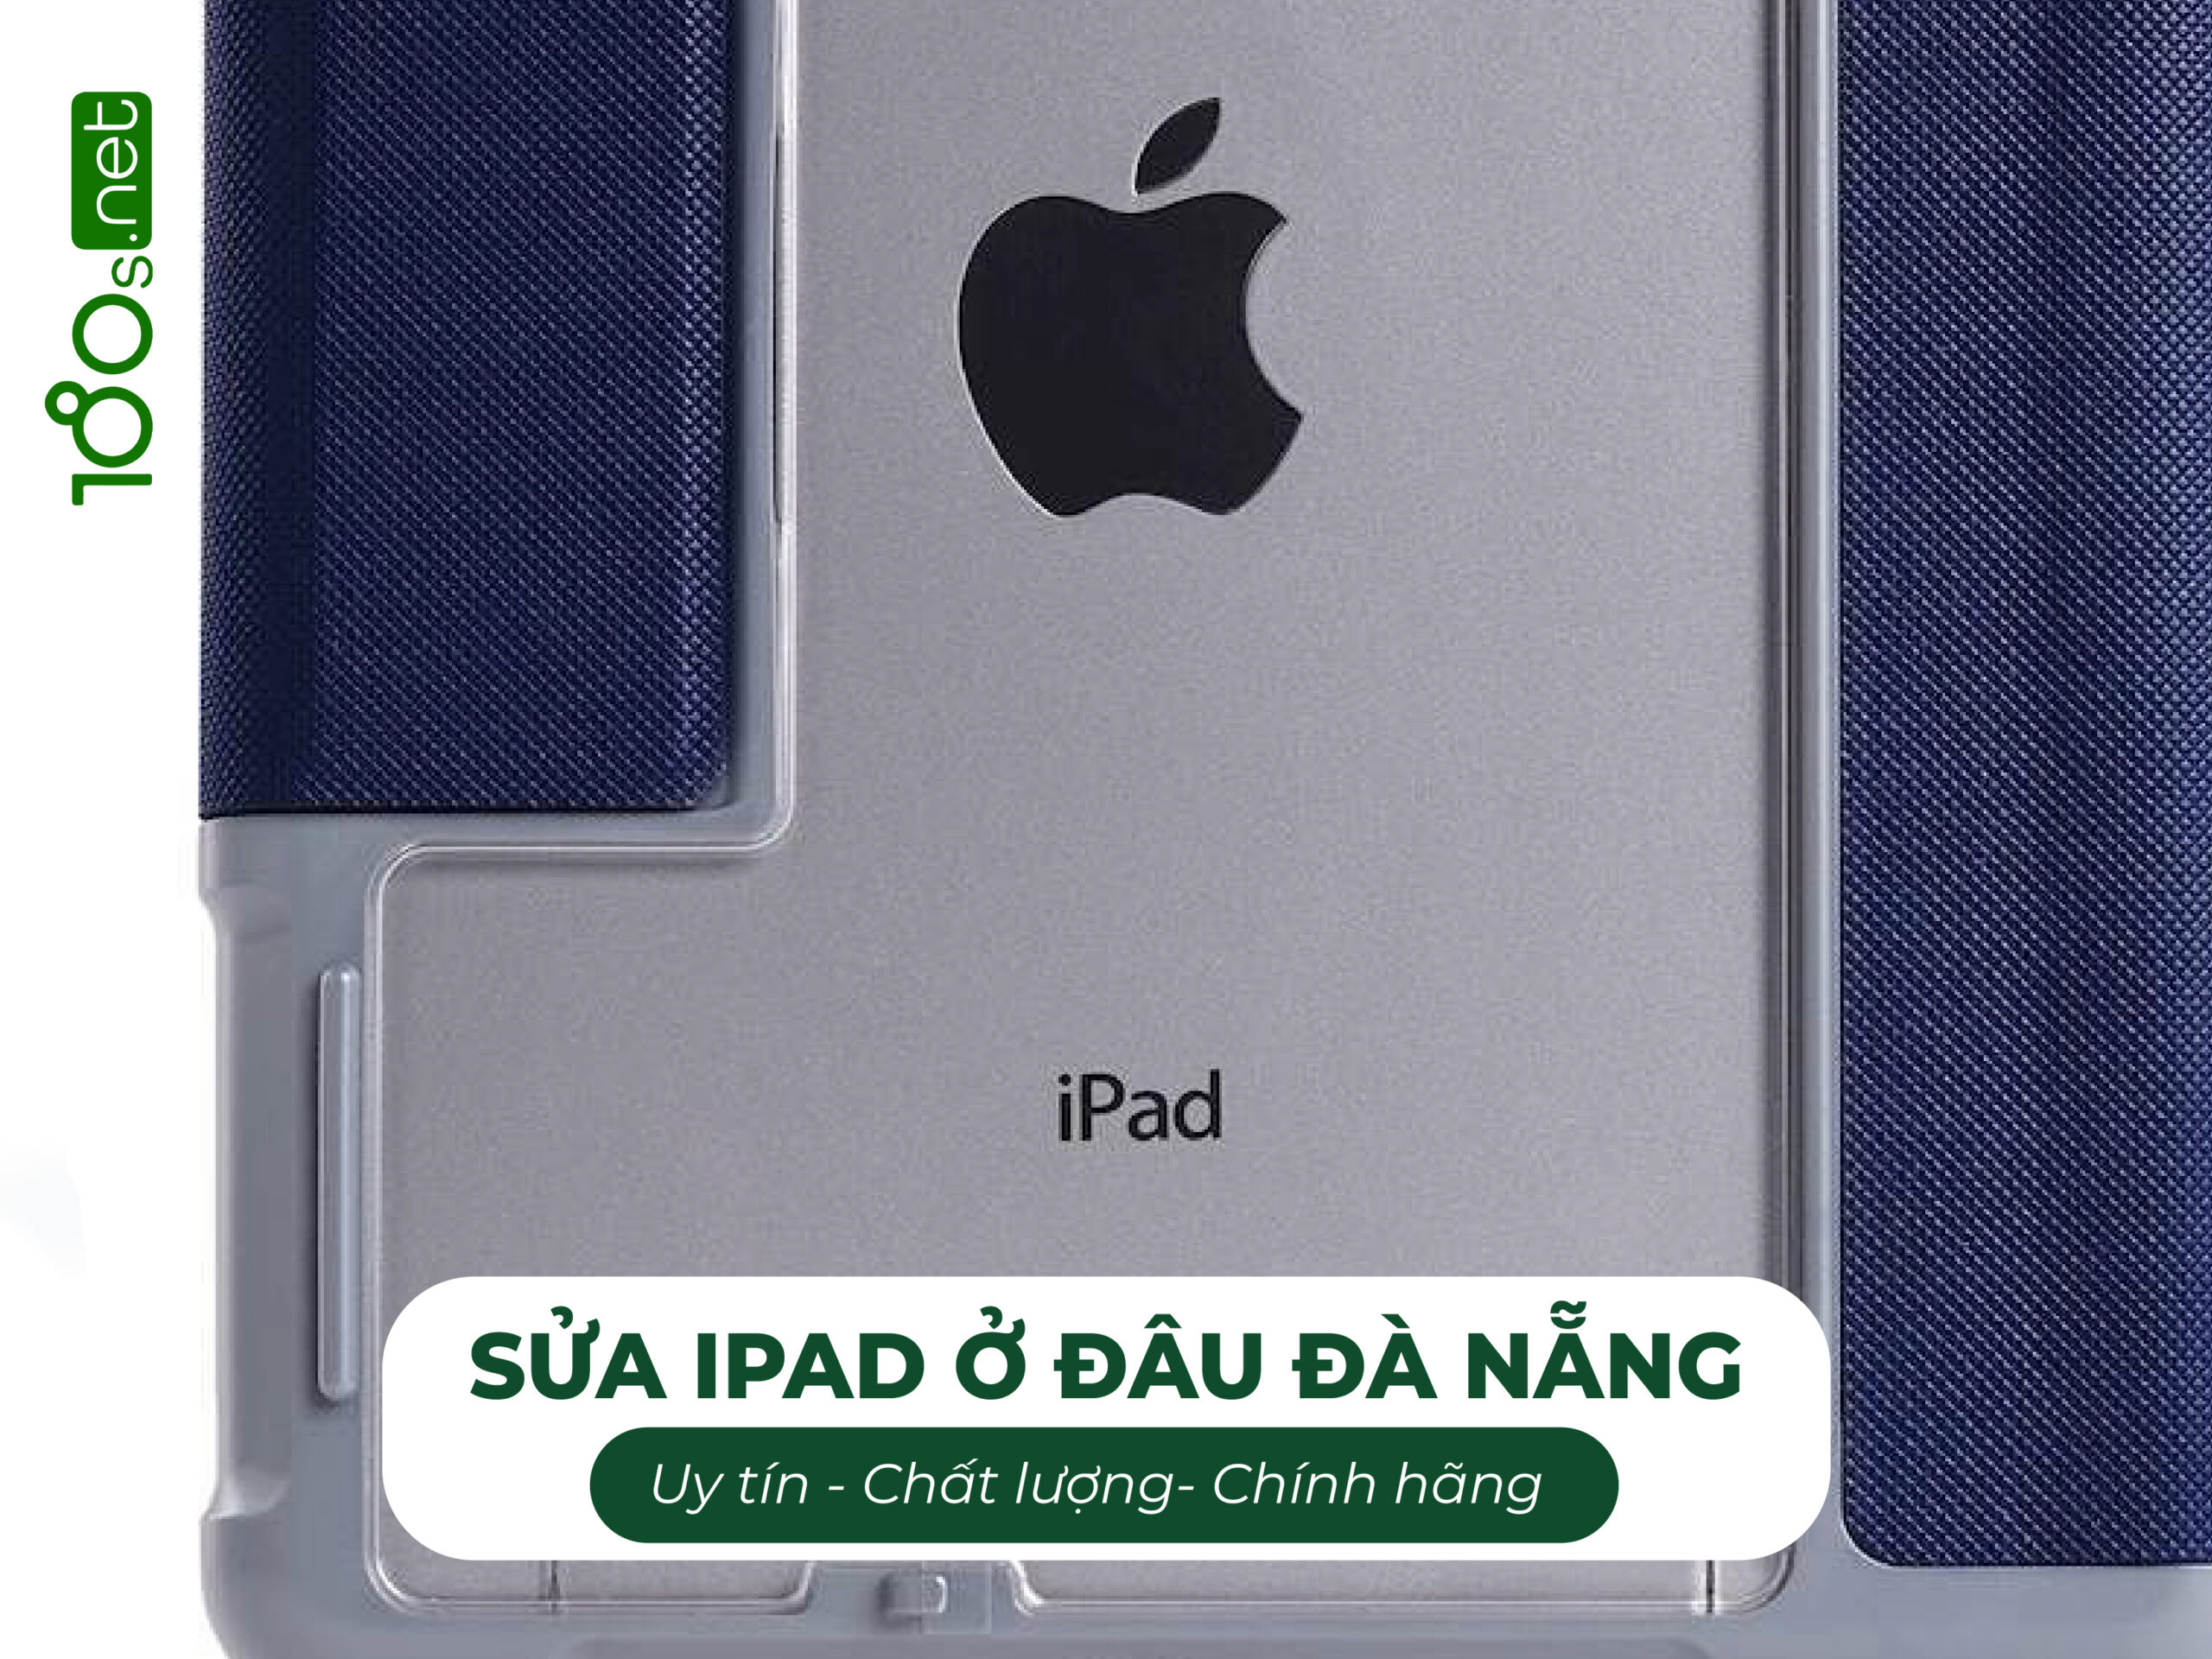 Sửa iPad ở đâu Đà Nẵng uy tín chất lượng chính hãng